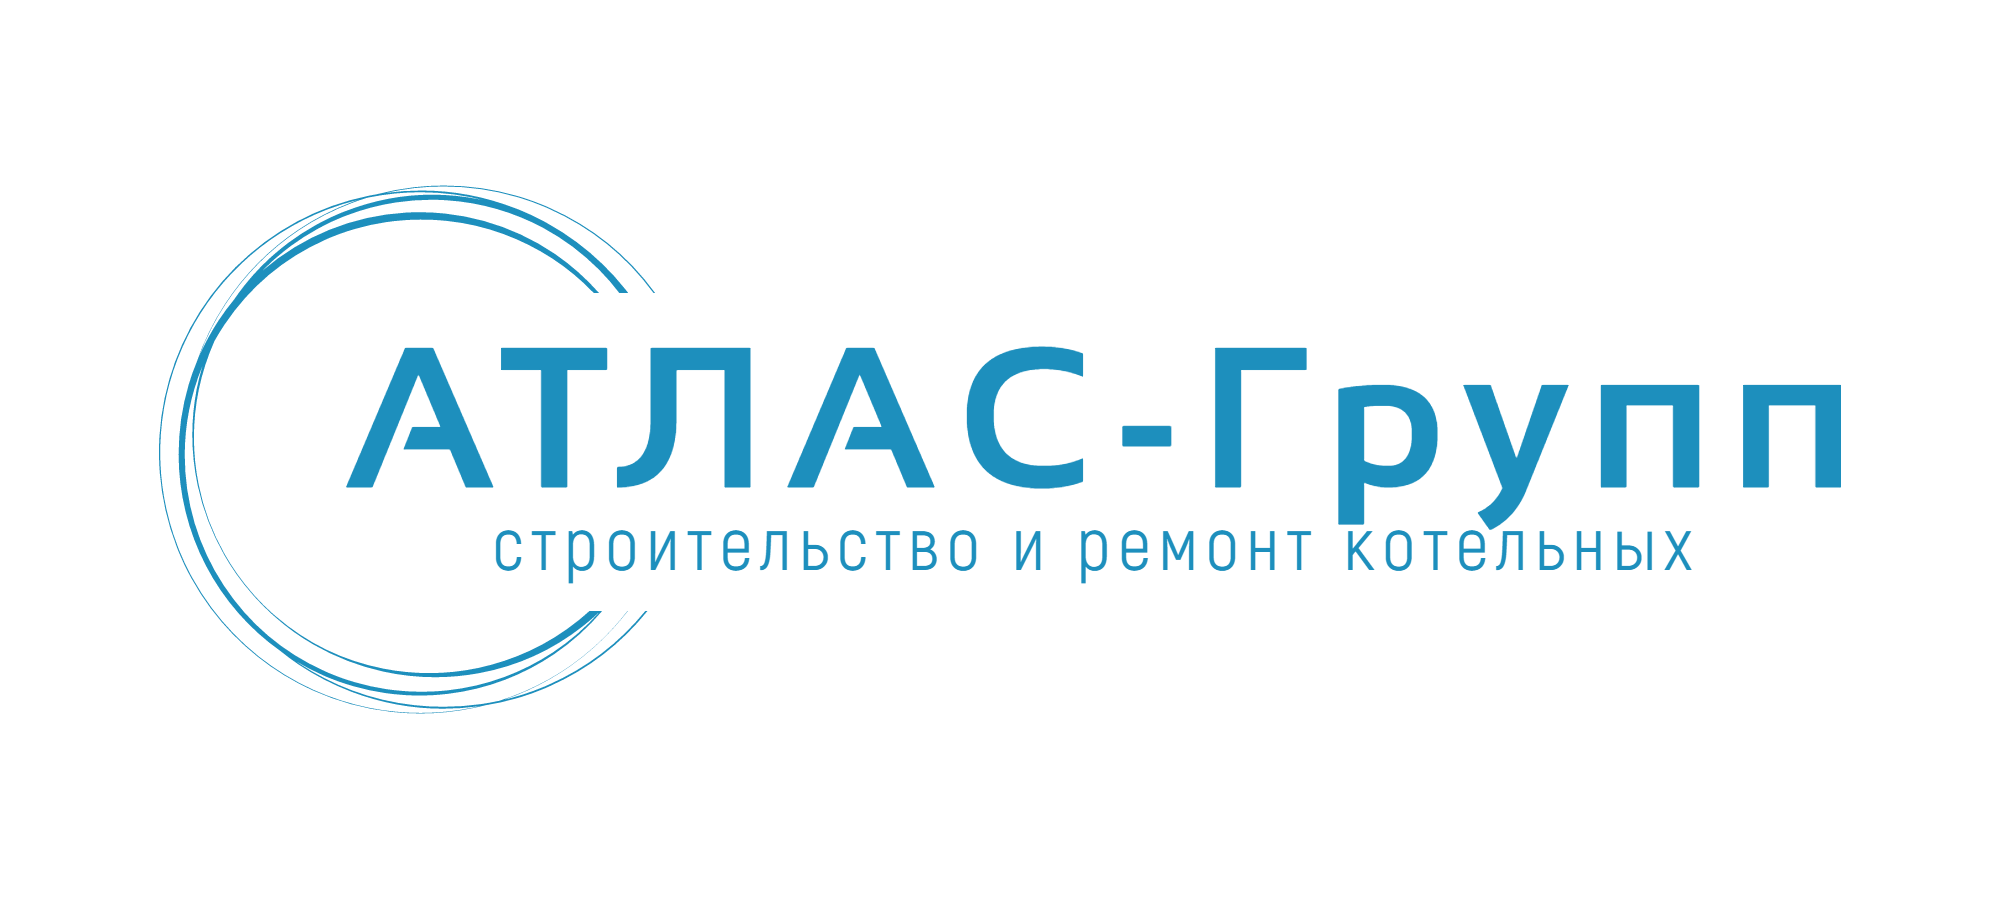 ООО Атлас-Групп - Город Тюмень logo-atlas.png